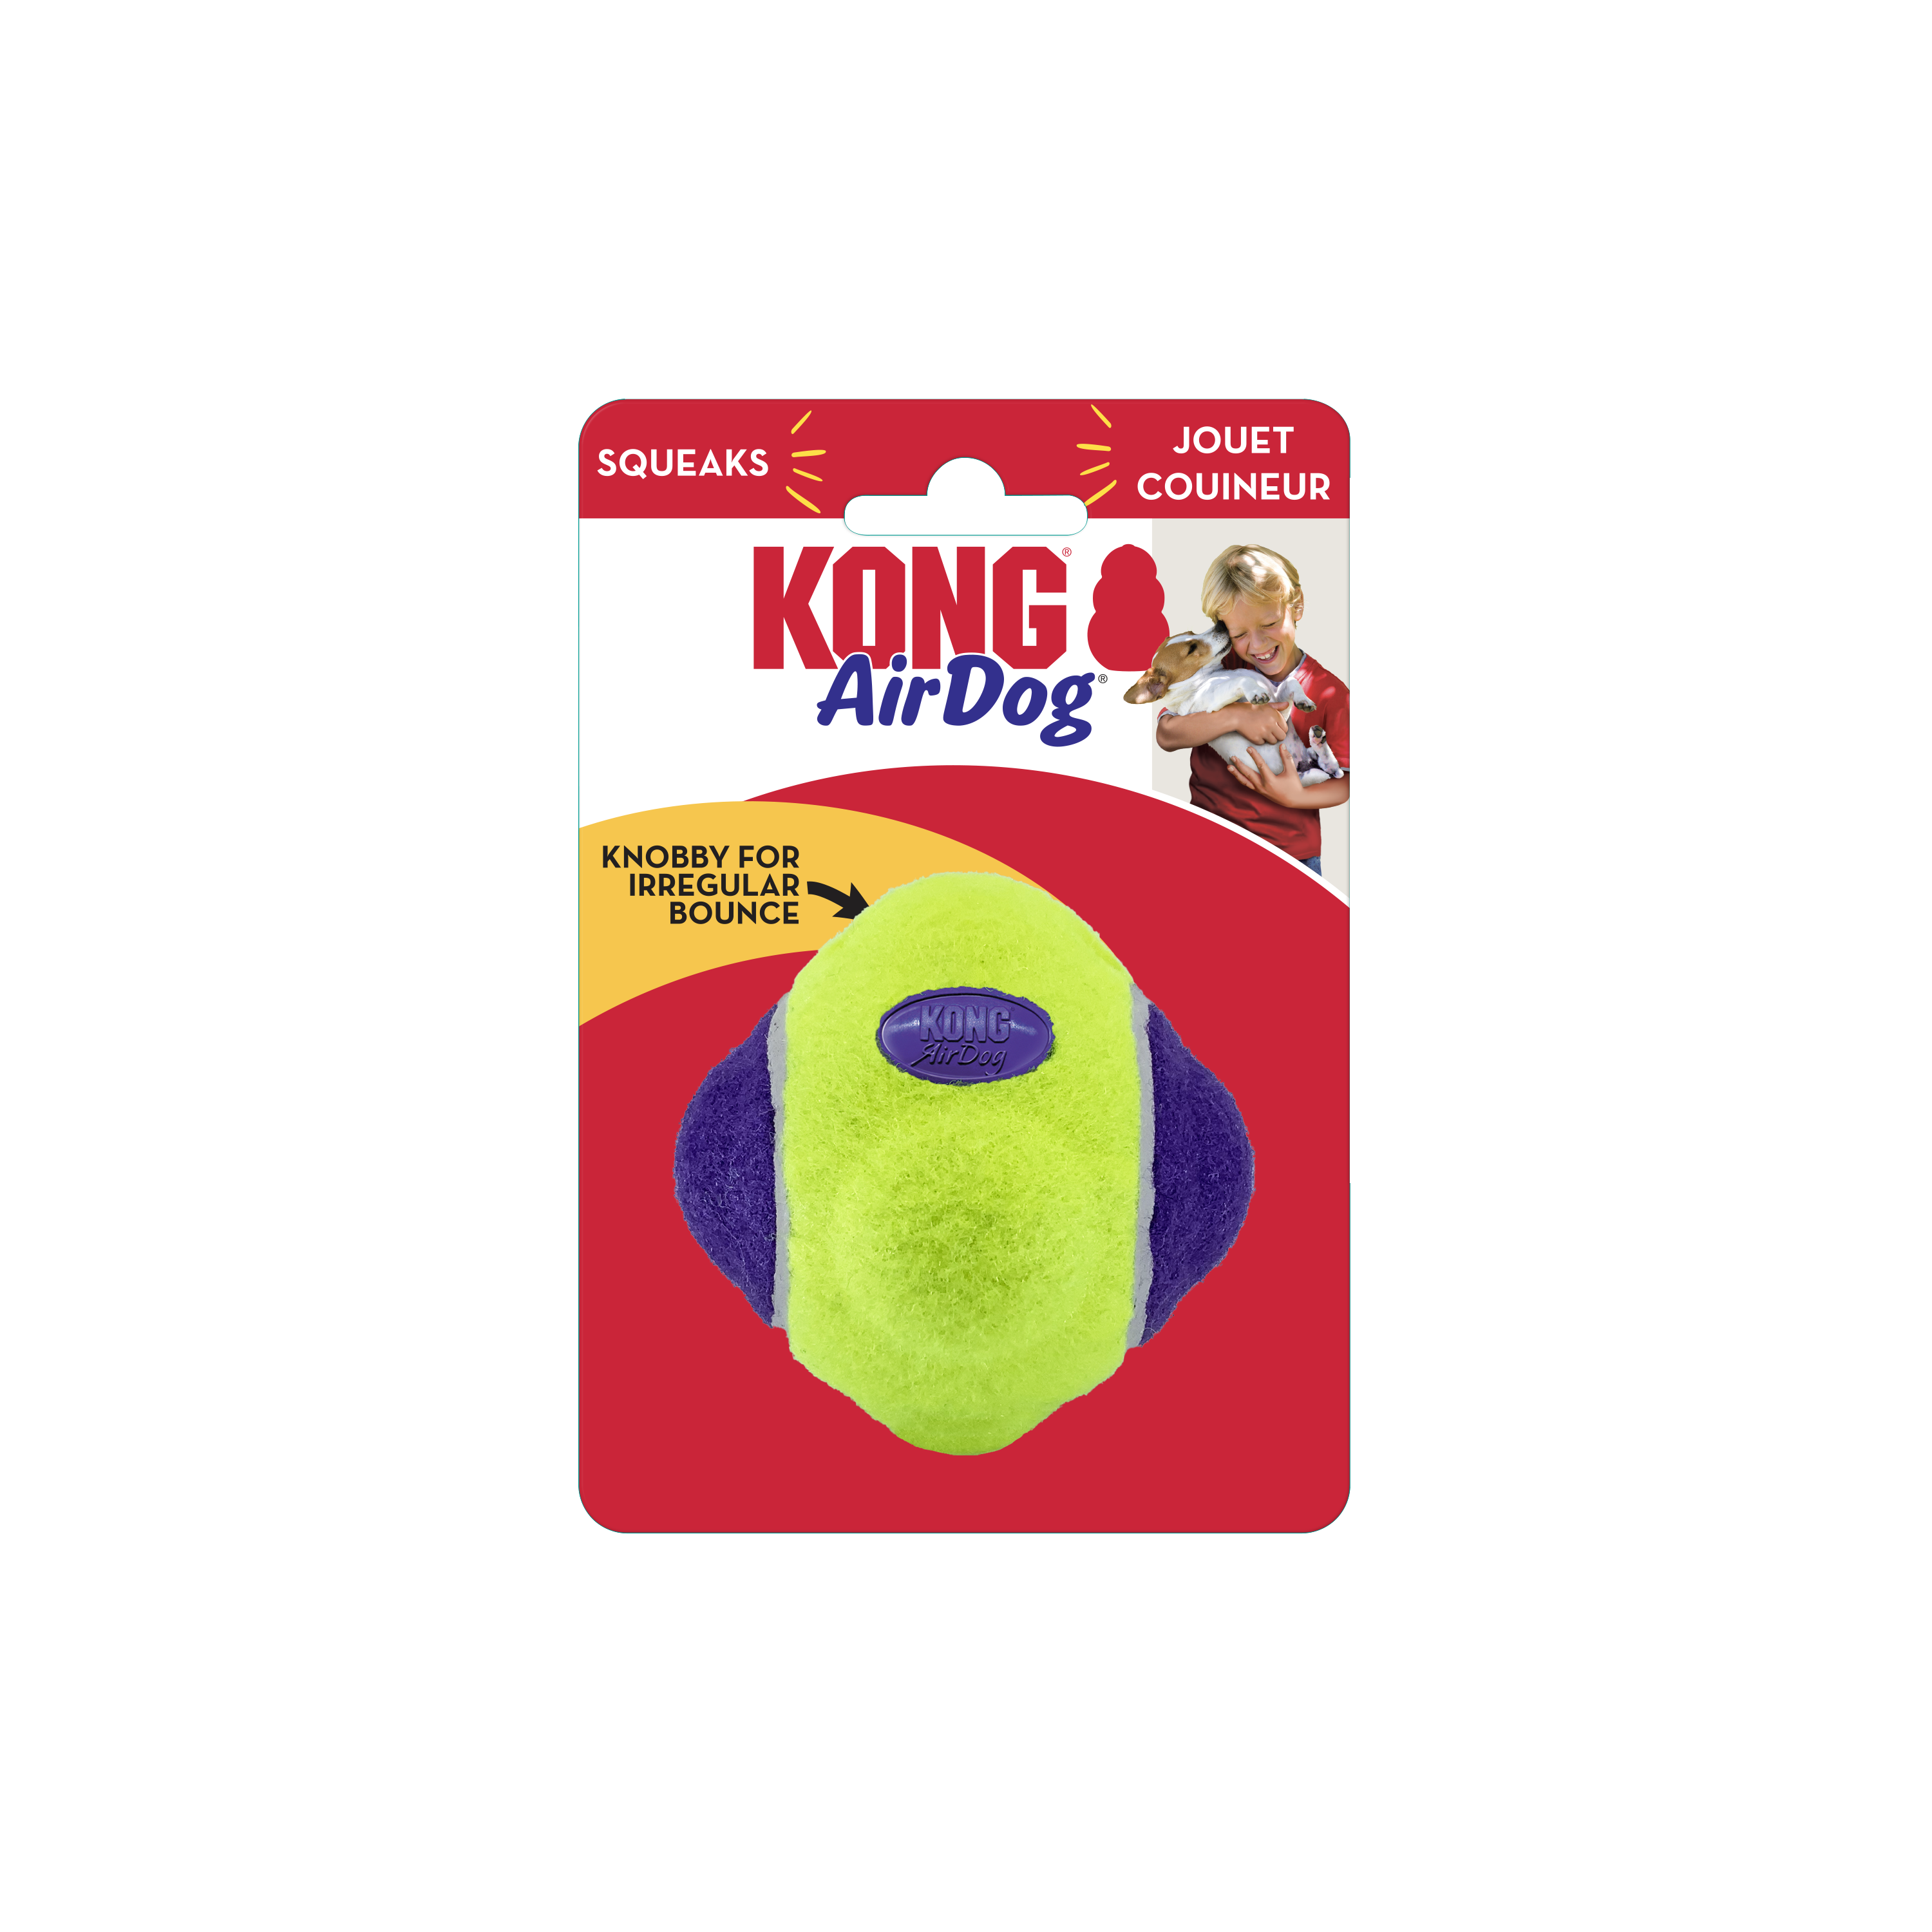 AirDog Squeaker Knobby Ball onpack imagen de producto